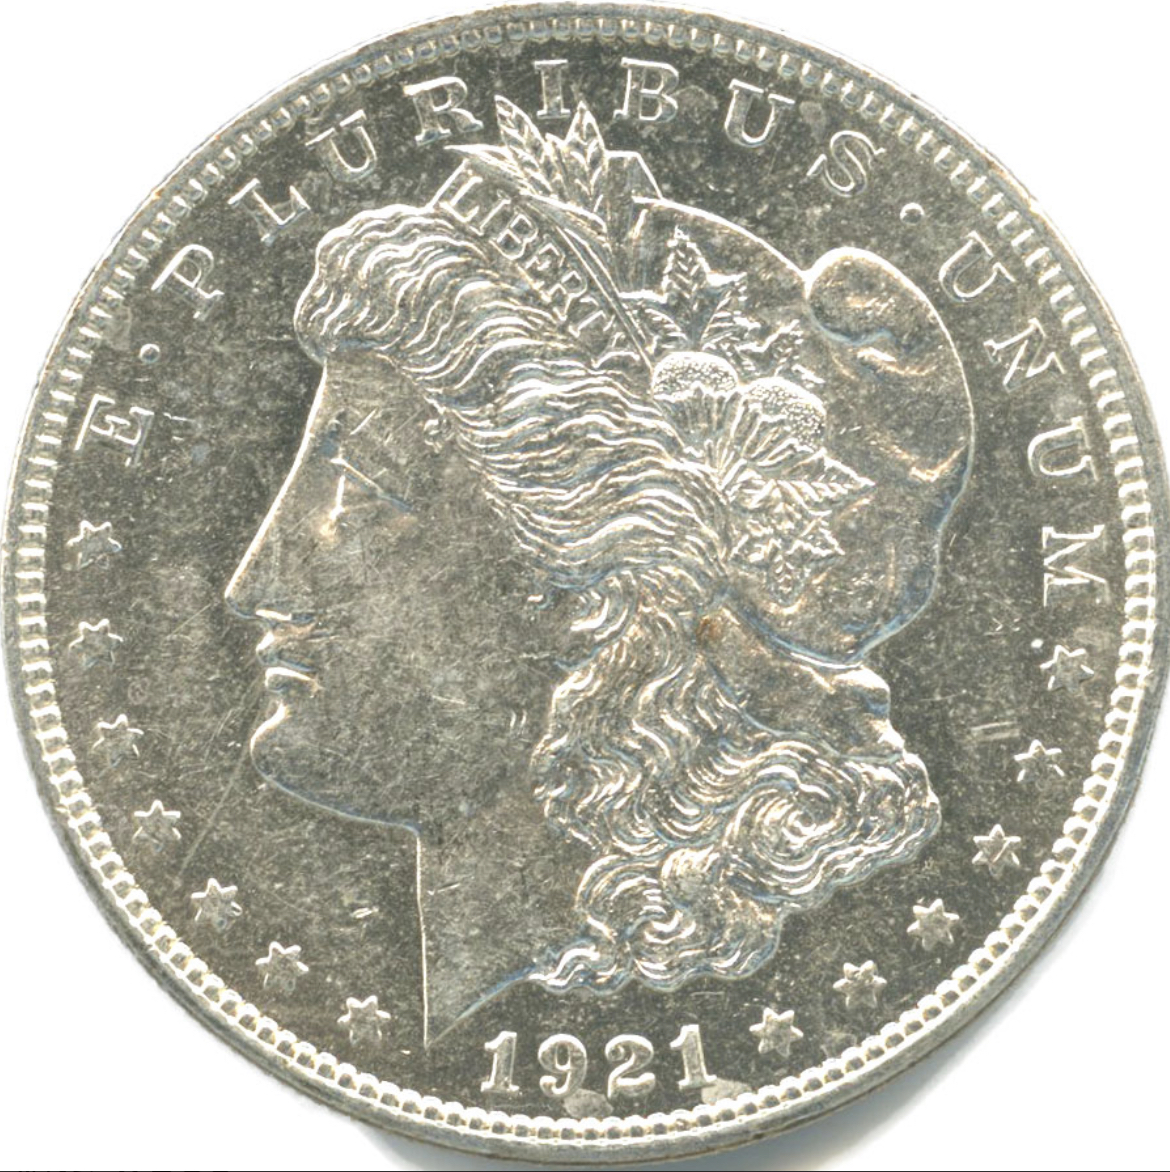 1ドル 銀貨 モルガンやピース、イーグルなど有名銀貨の価値 